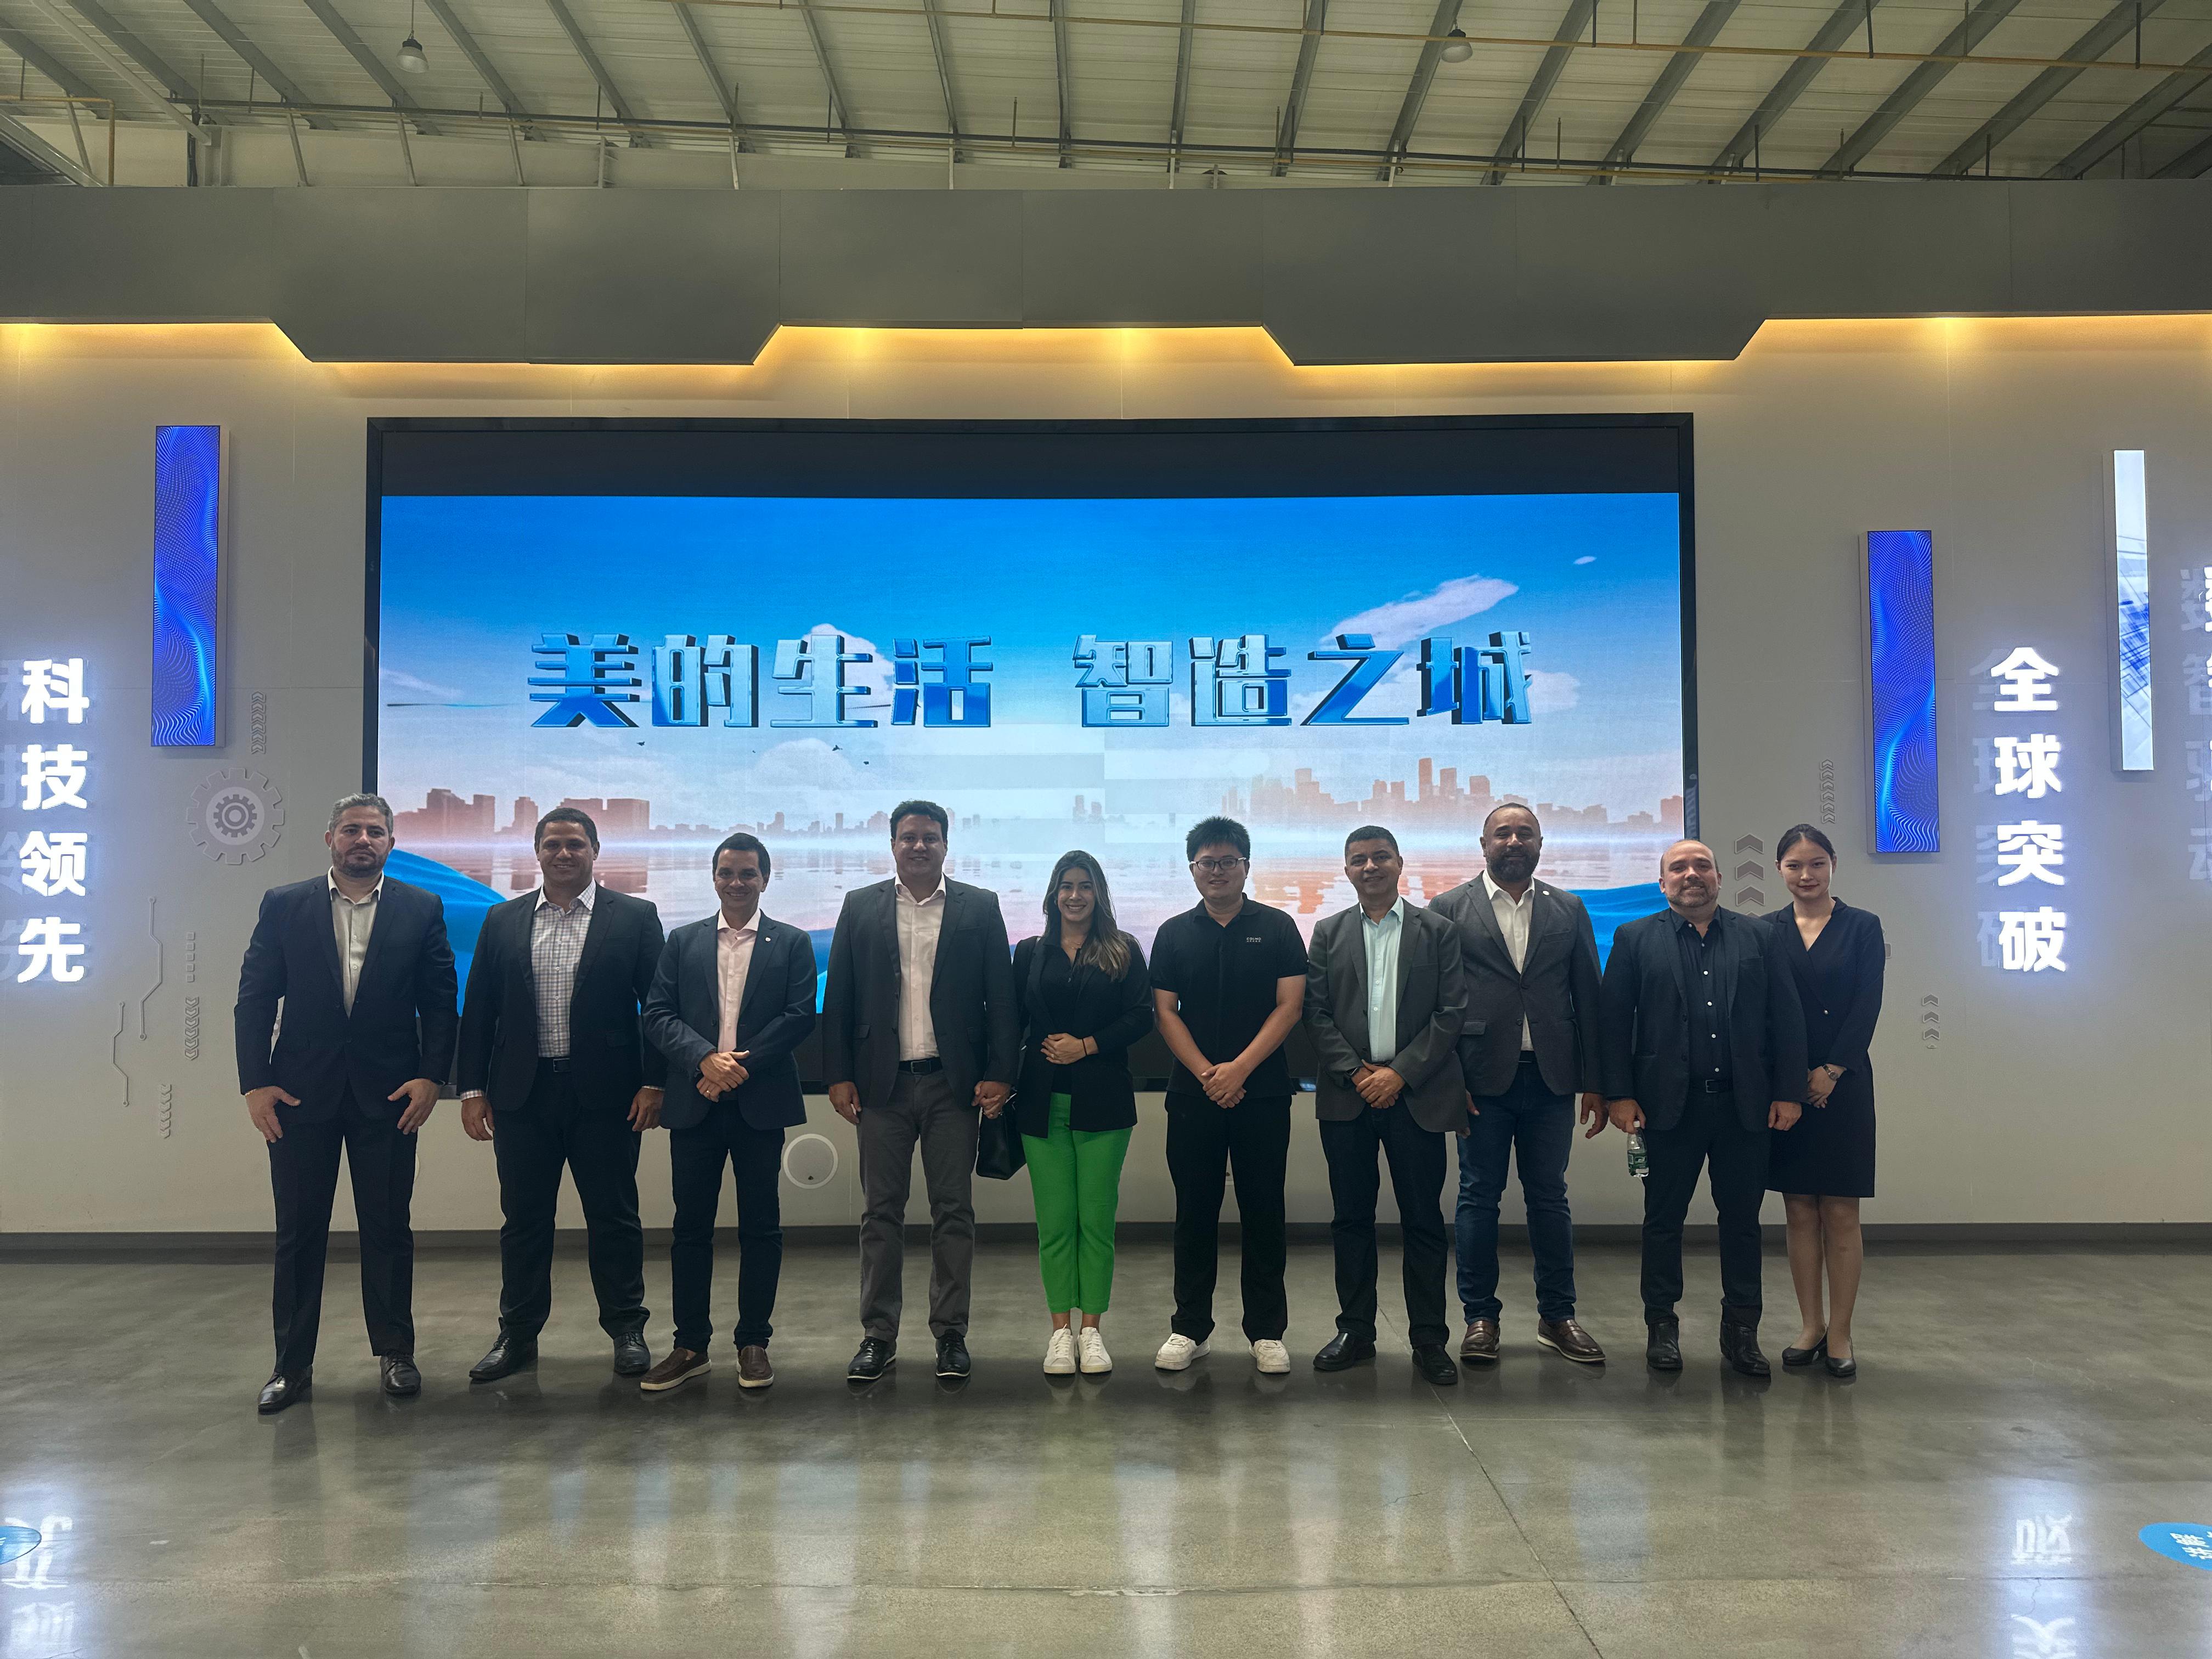 Comitiva em registro com equipe de executivos da empresa Midea, na Província de Hubei